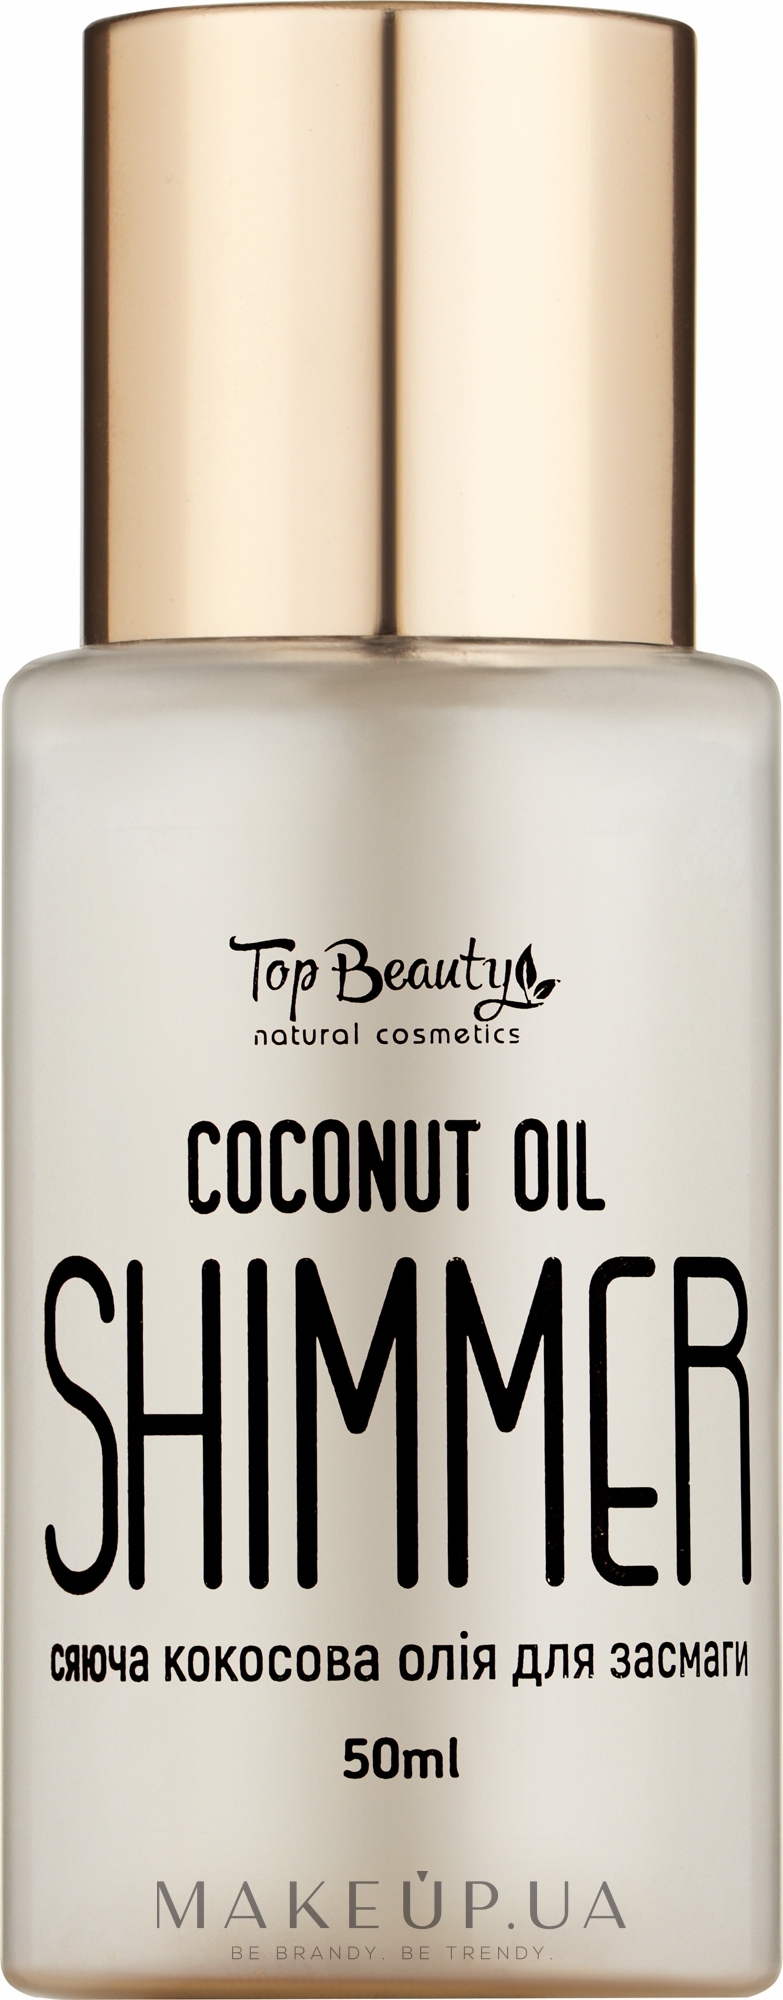 Масло кокосовое для загара с шимером - Top Beauty Coconut Oil Shimmer  — фото 50ml